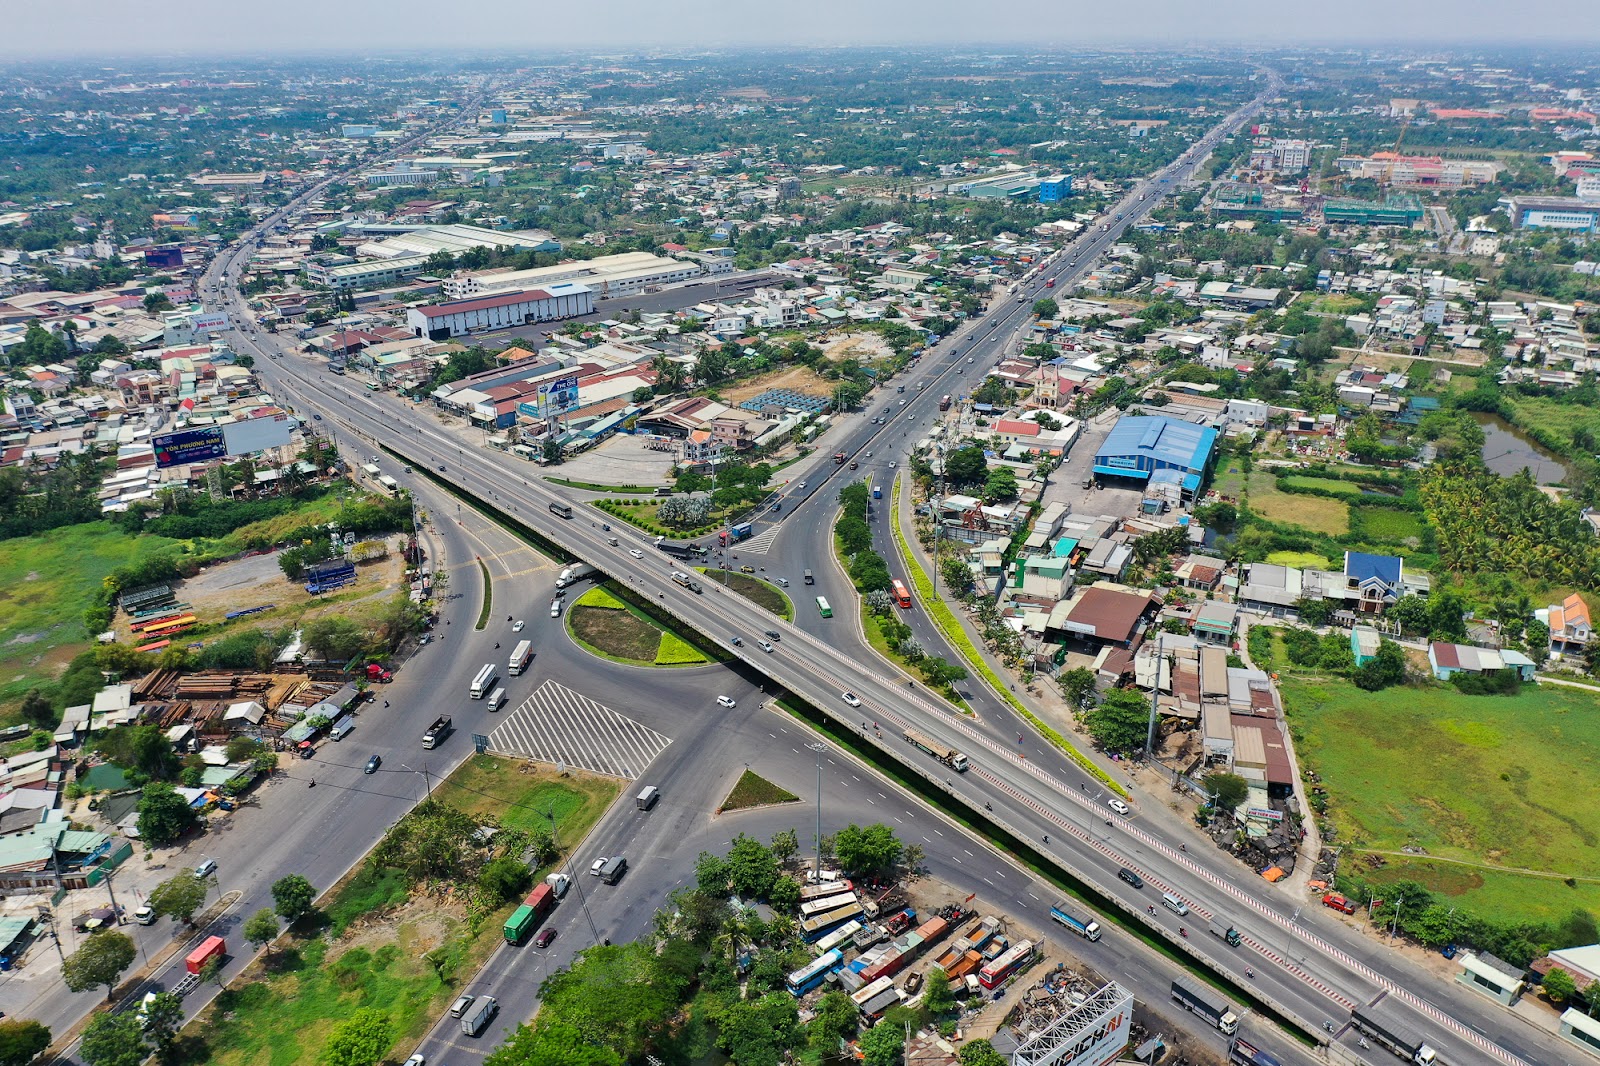 Diện mạo huyện đông dân nhất Việt Nam muốn trở thành thành phố - Ảnh 7.